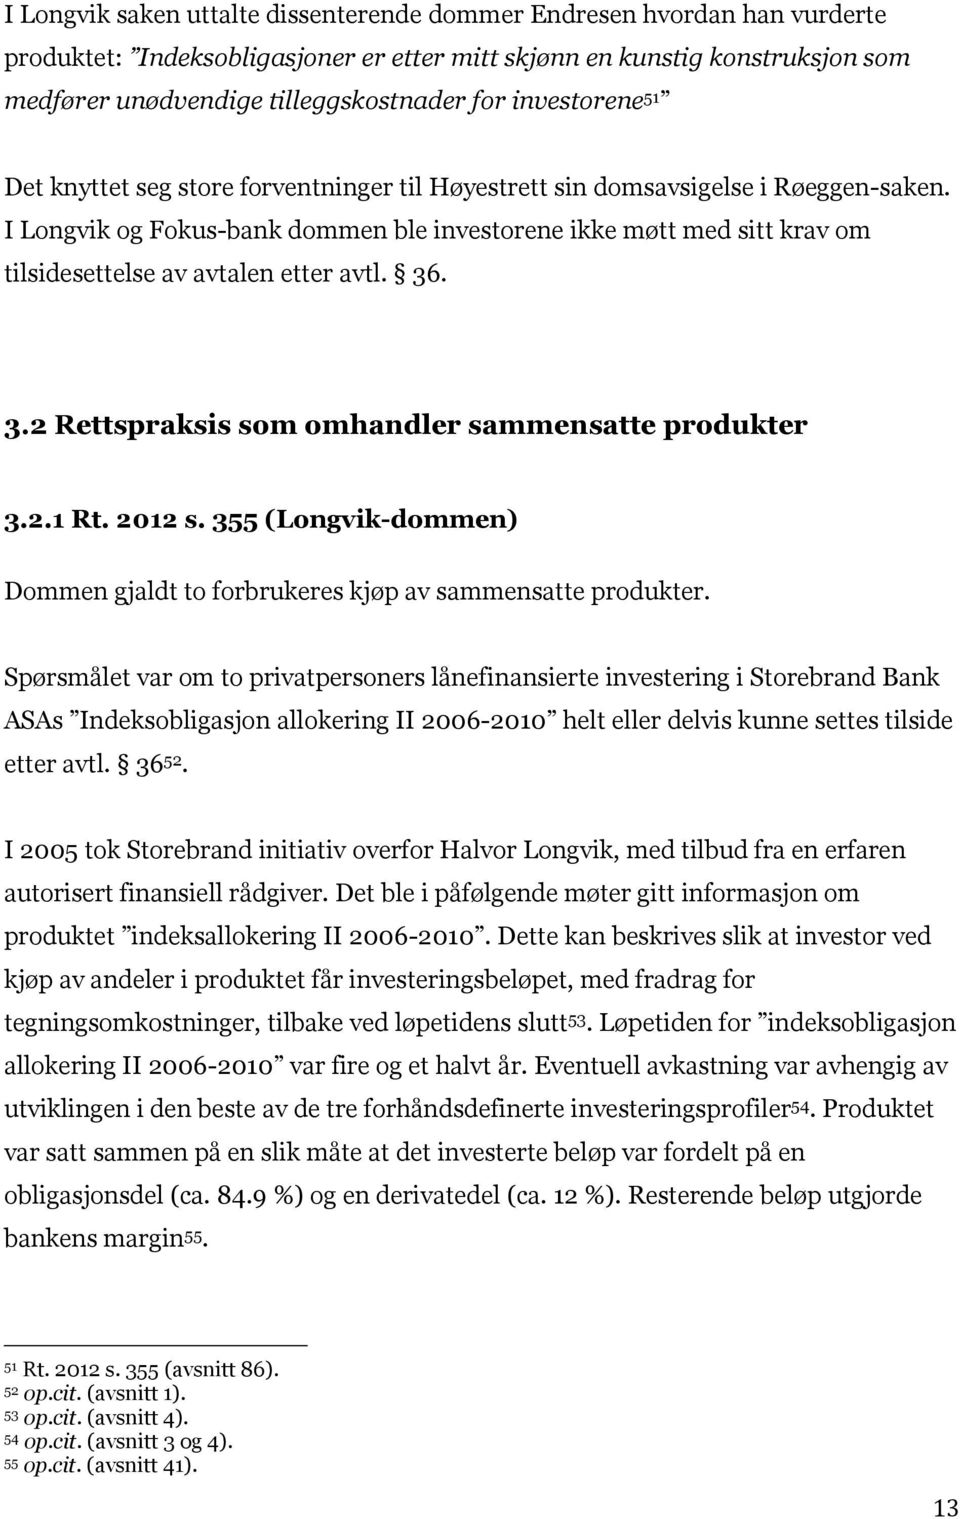 I Longvik og Fokus-bank dommen ble investorene ikke møtt med sitt krav om tilsidesettelse av avtalen etter avtl. 36. 3.2 Rettspraksis som omhandler sammensatte produkter 3.2.1 Rt. 2012 s.